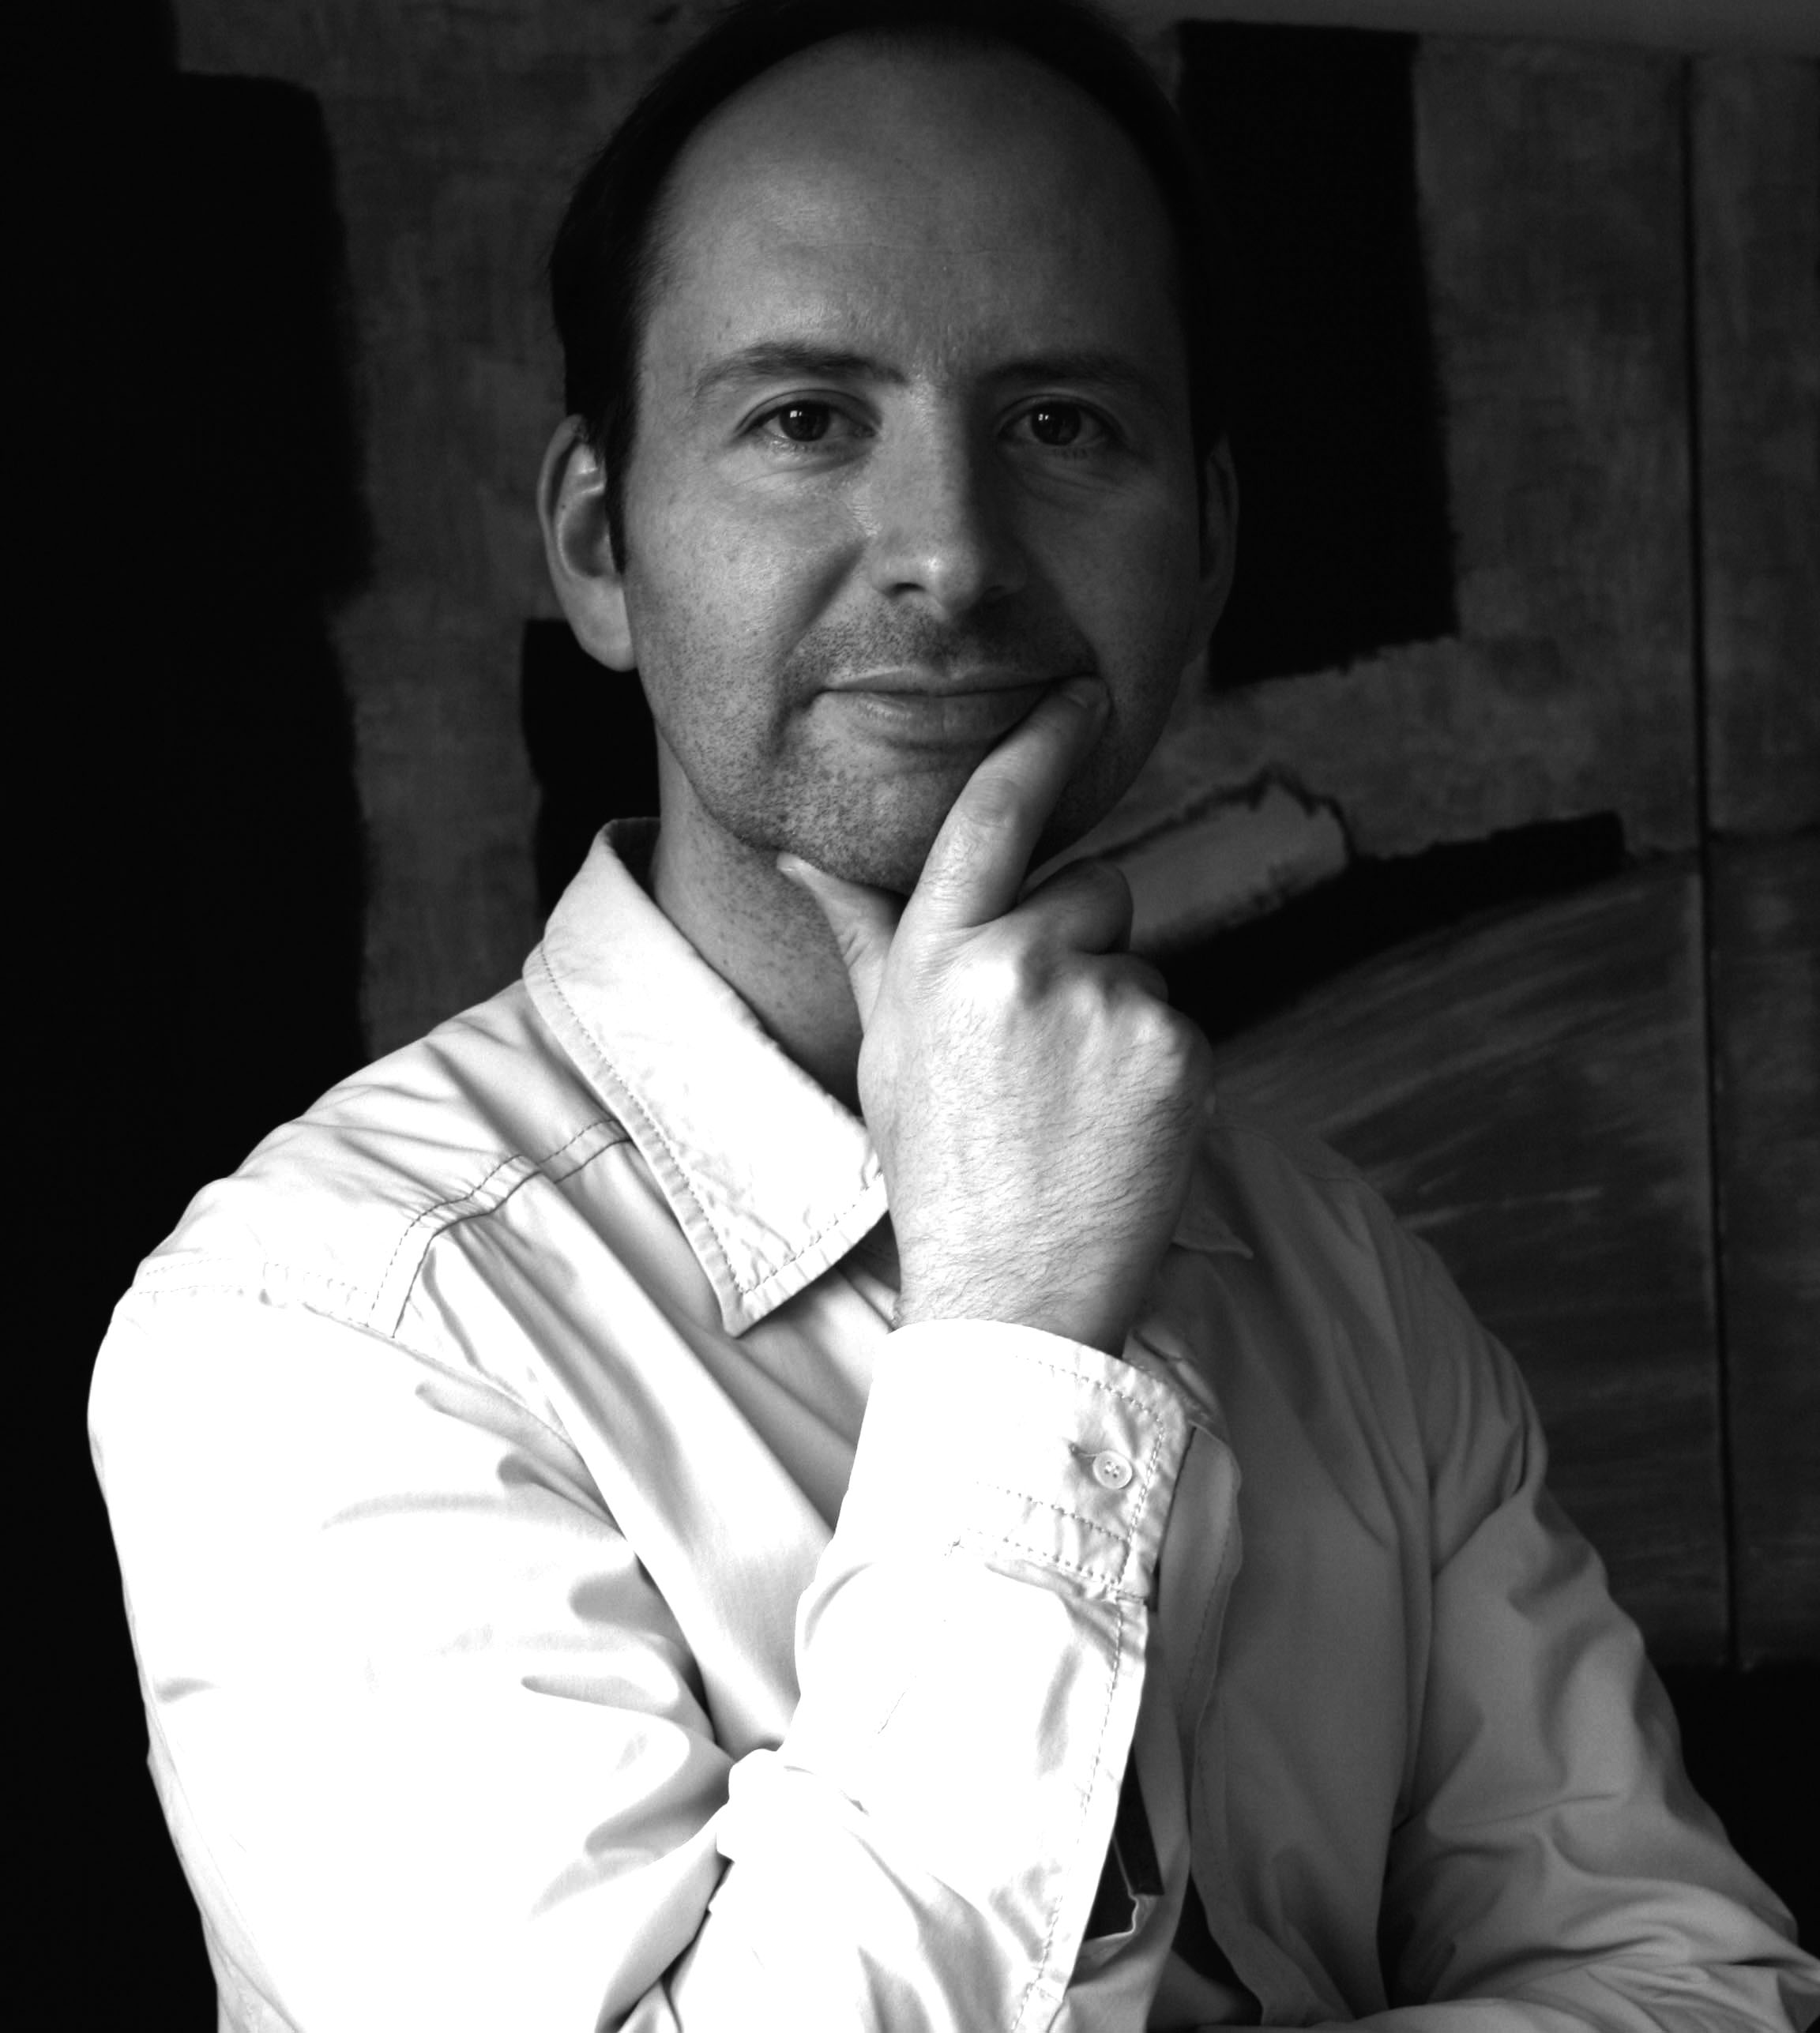 Alex Martin, Producer